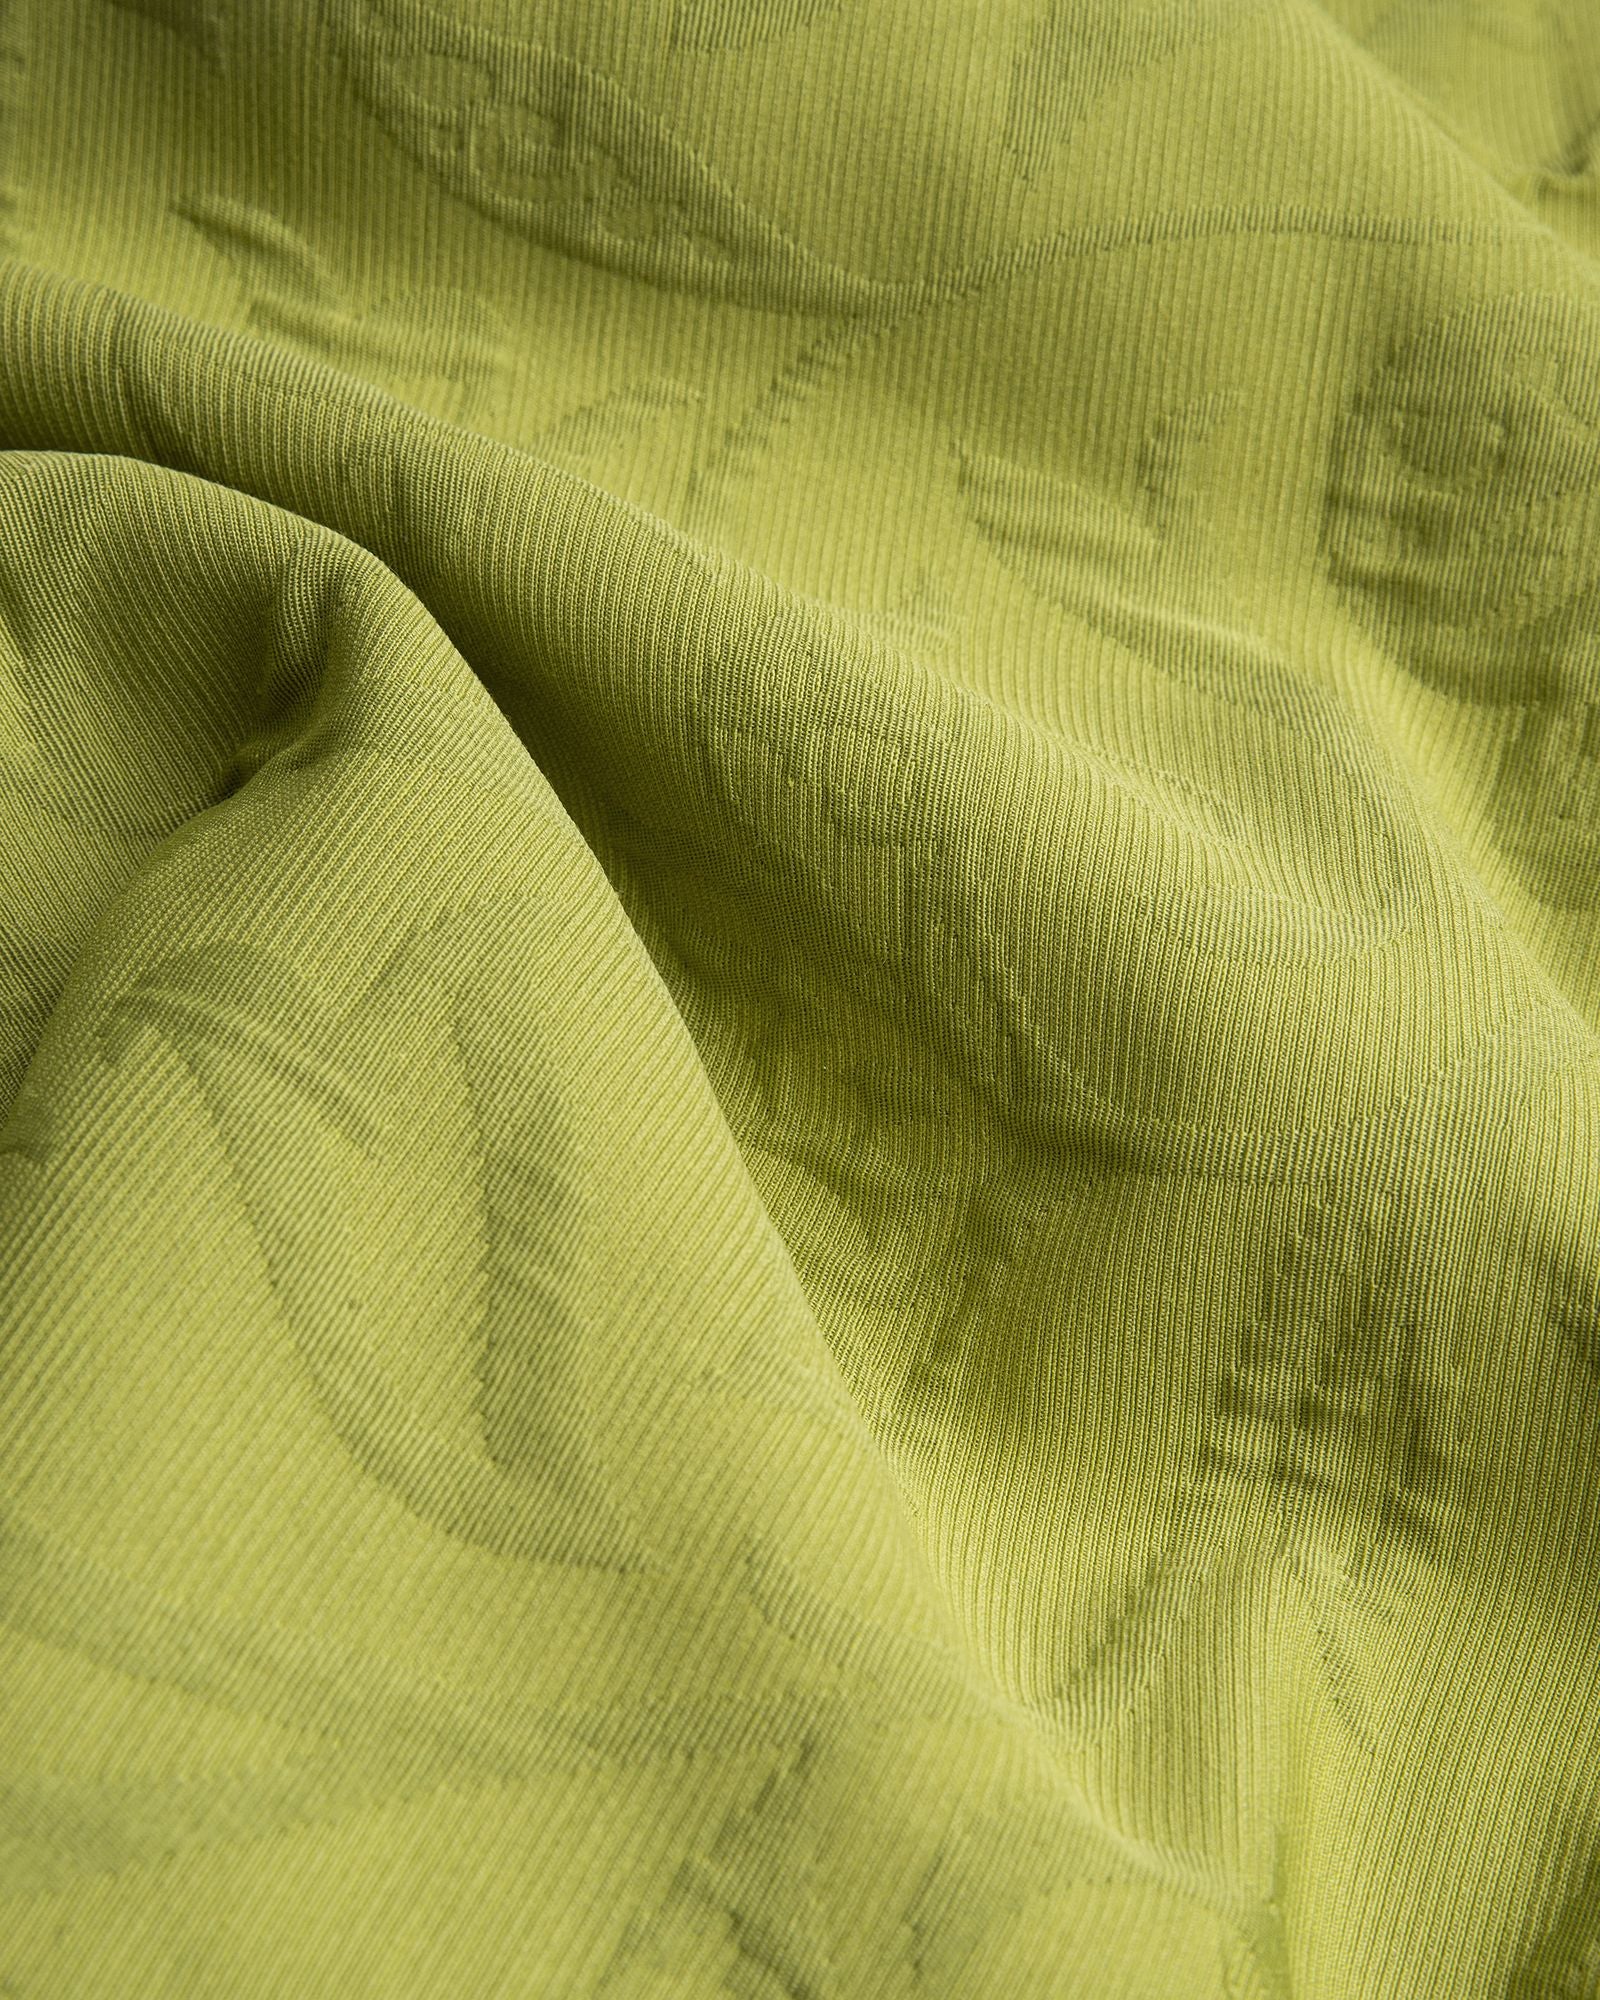 Größe: Ø170 cm Farbe: limone #farbe_limone